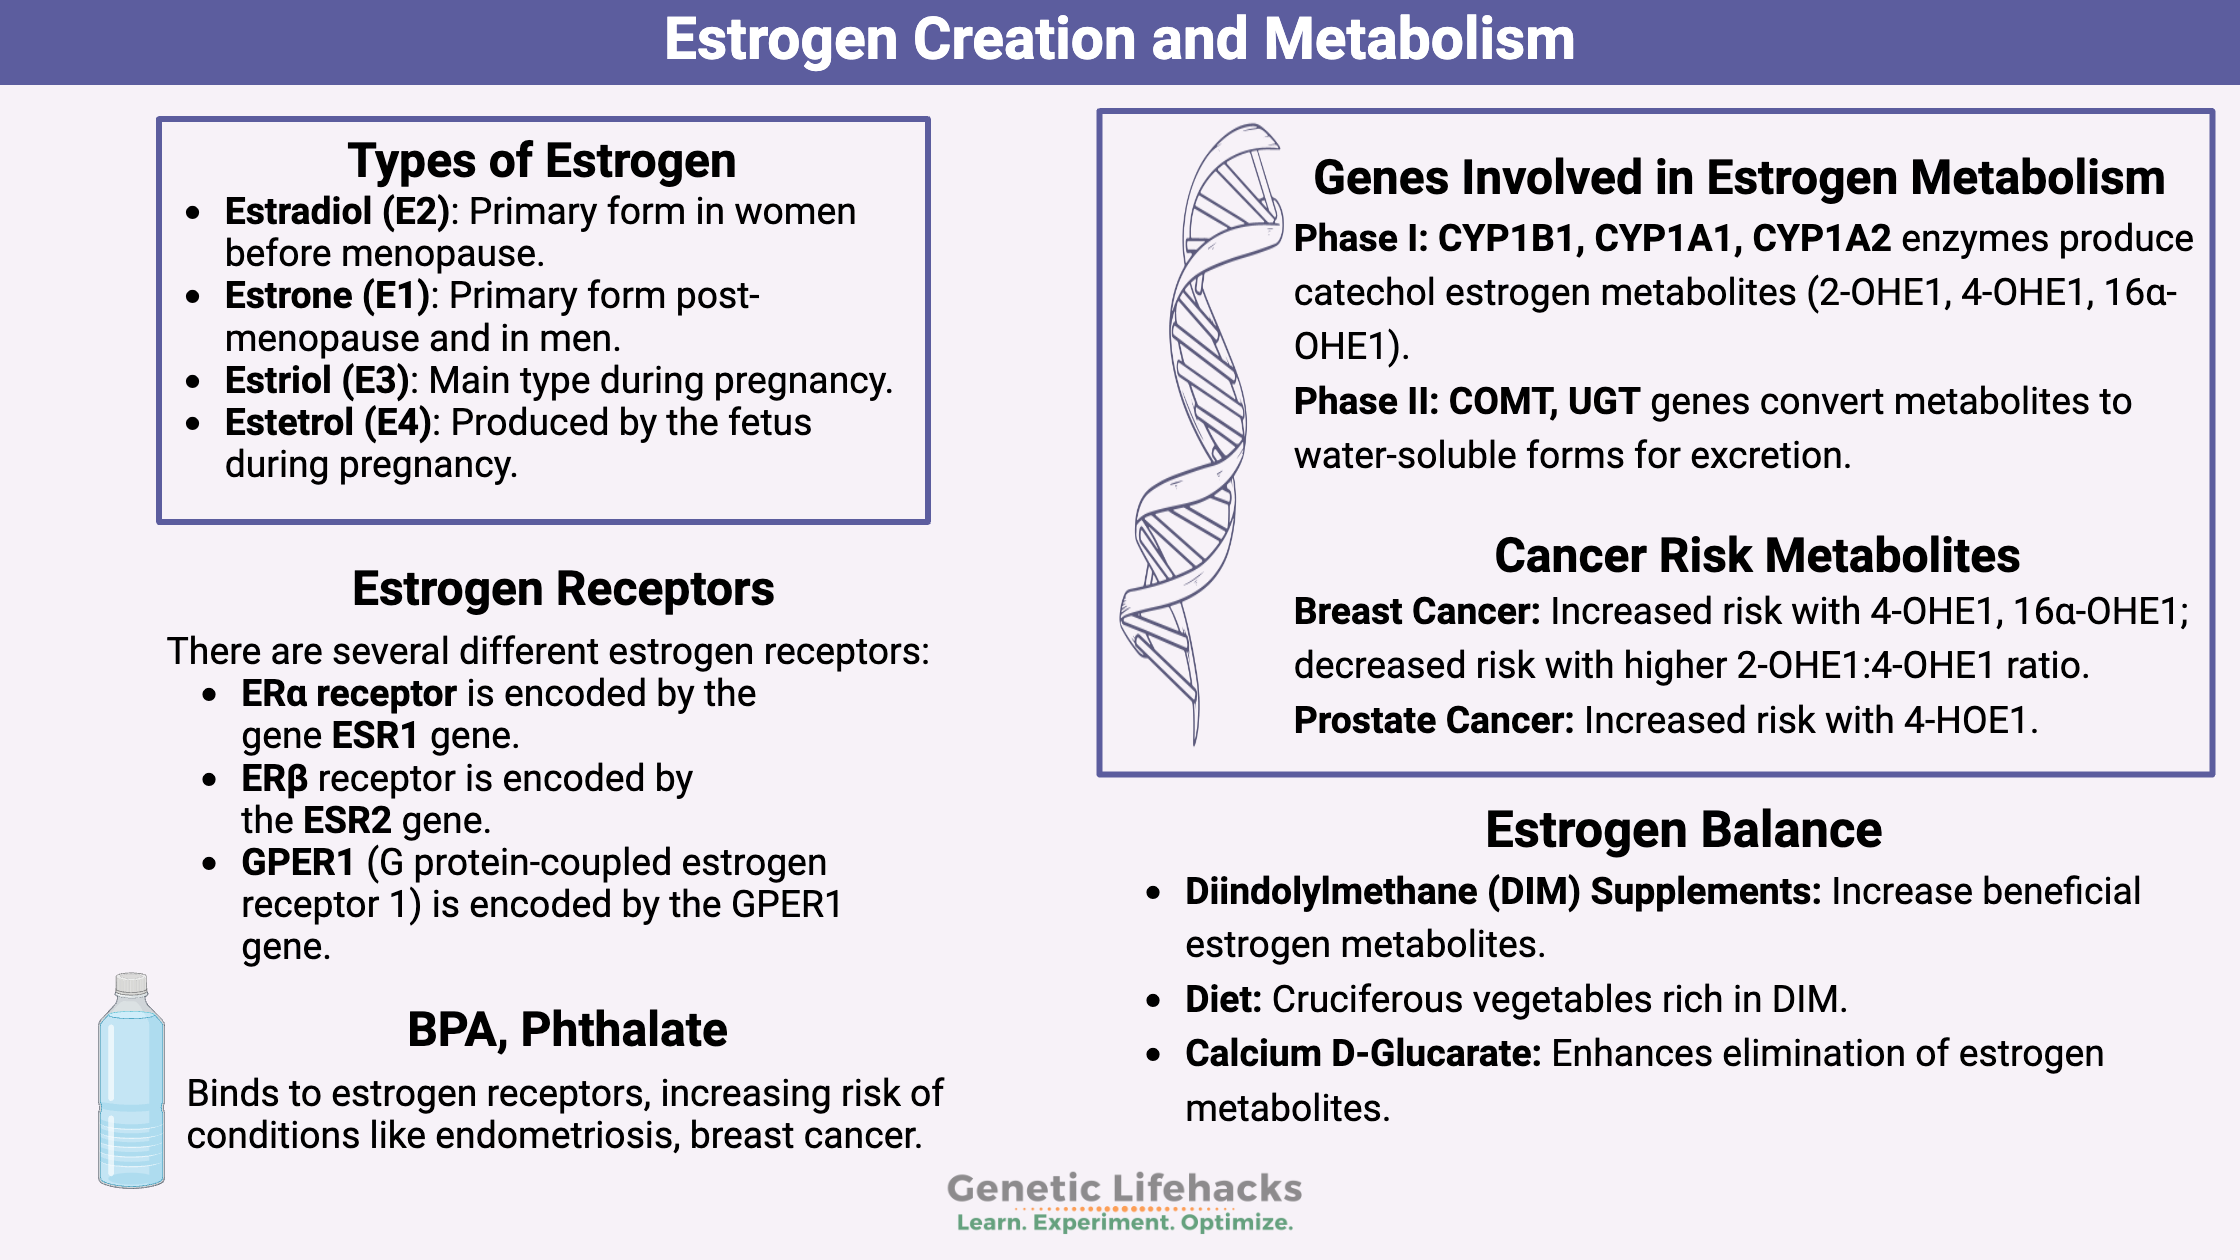 Estrogen metabolism, estrogen metabolites that increase cancer risk, estrogen genetic variants, steps to keep estrogen in balance